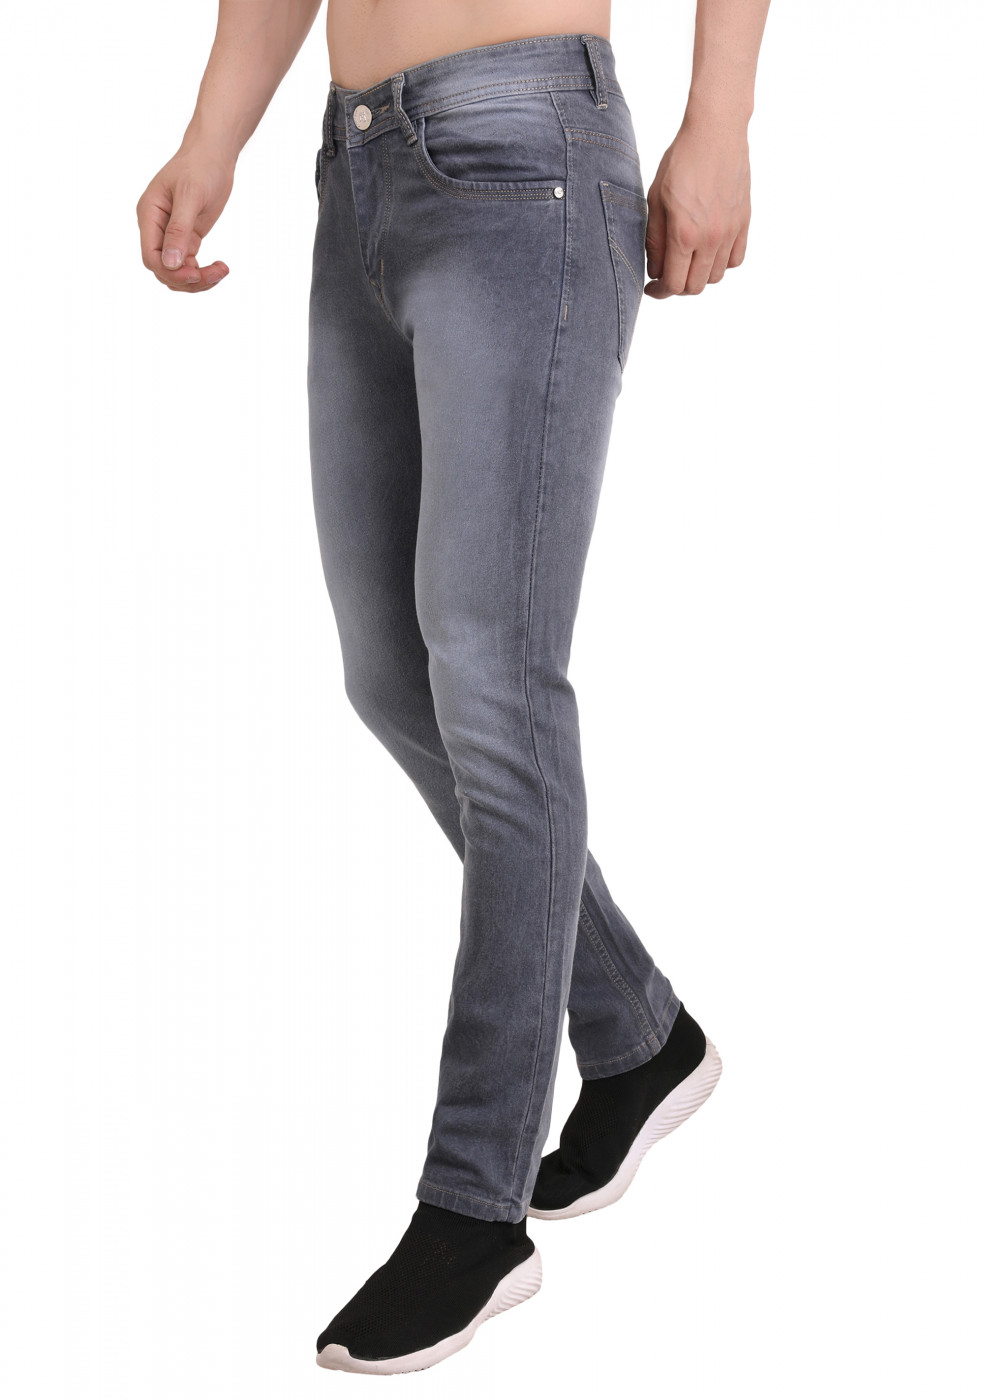 Gray Trendy Jeans For Men